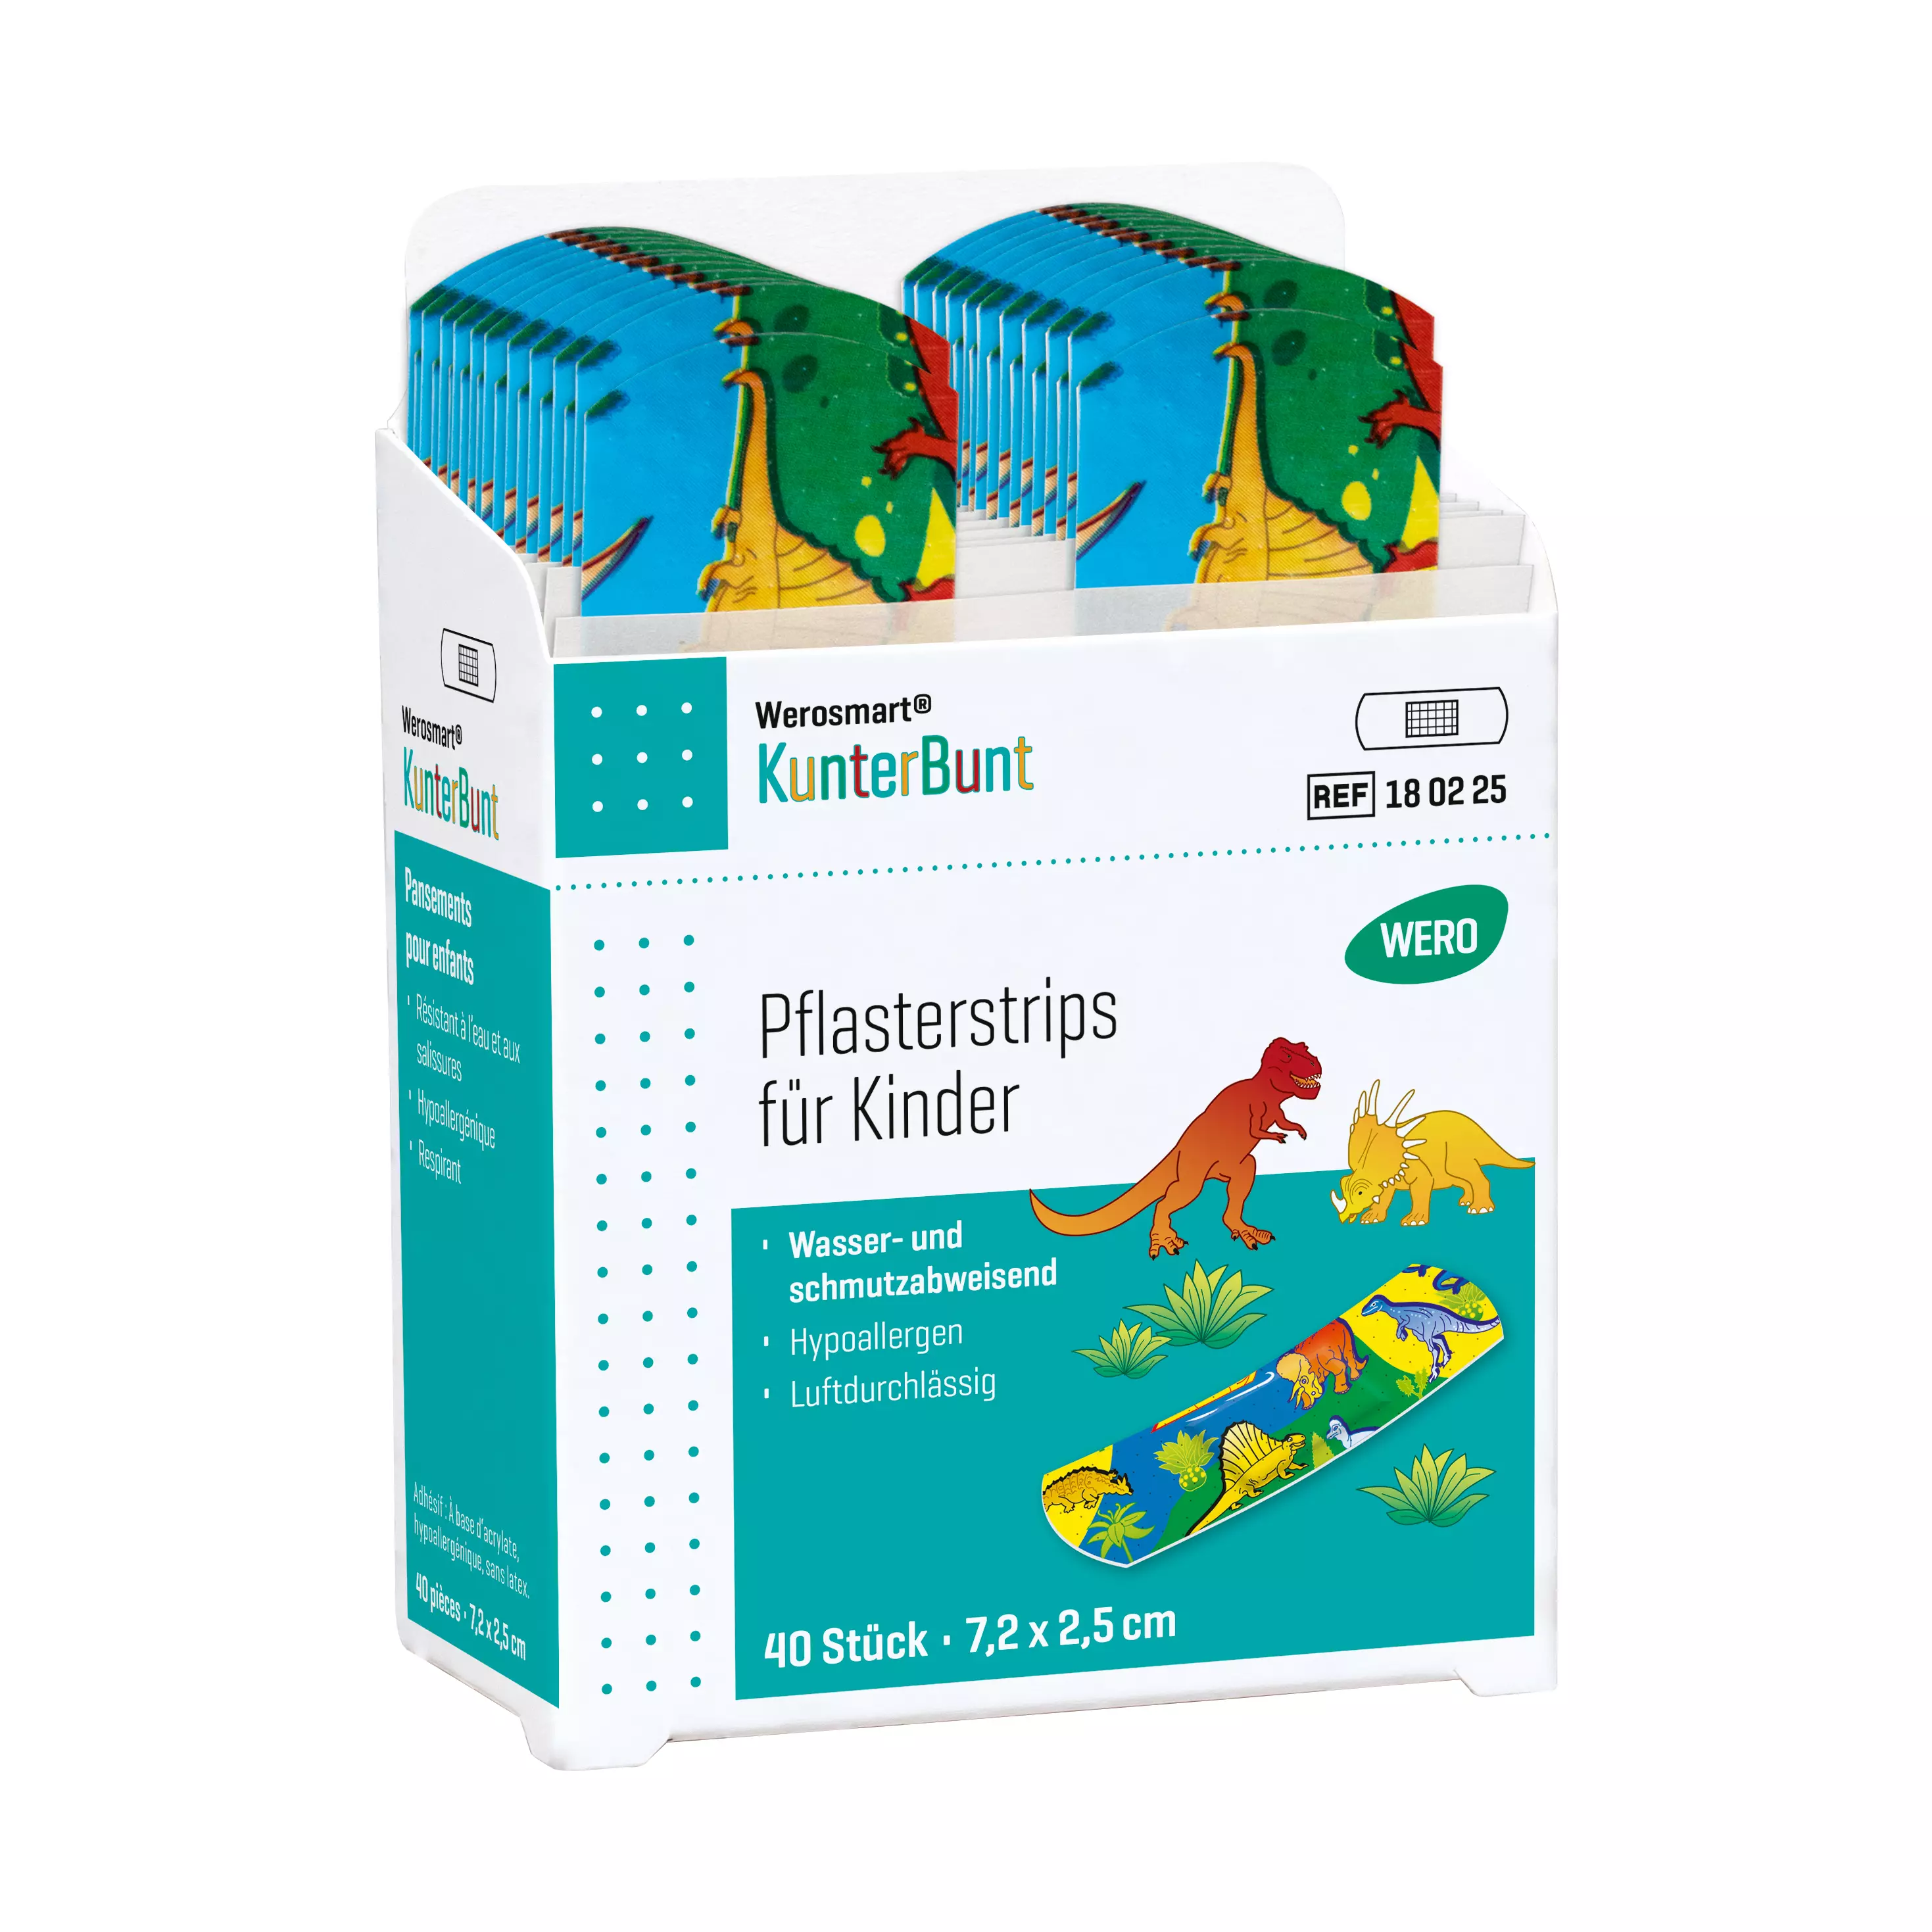 Werosmart® KunterBunt for children Plaster dispenser inserts Plaster strips - insert